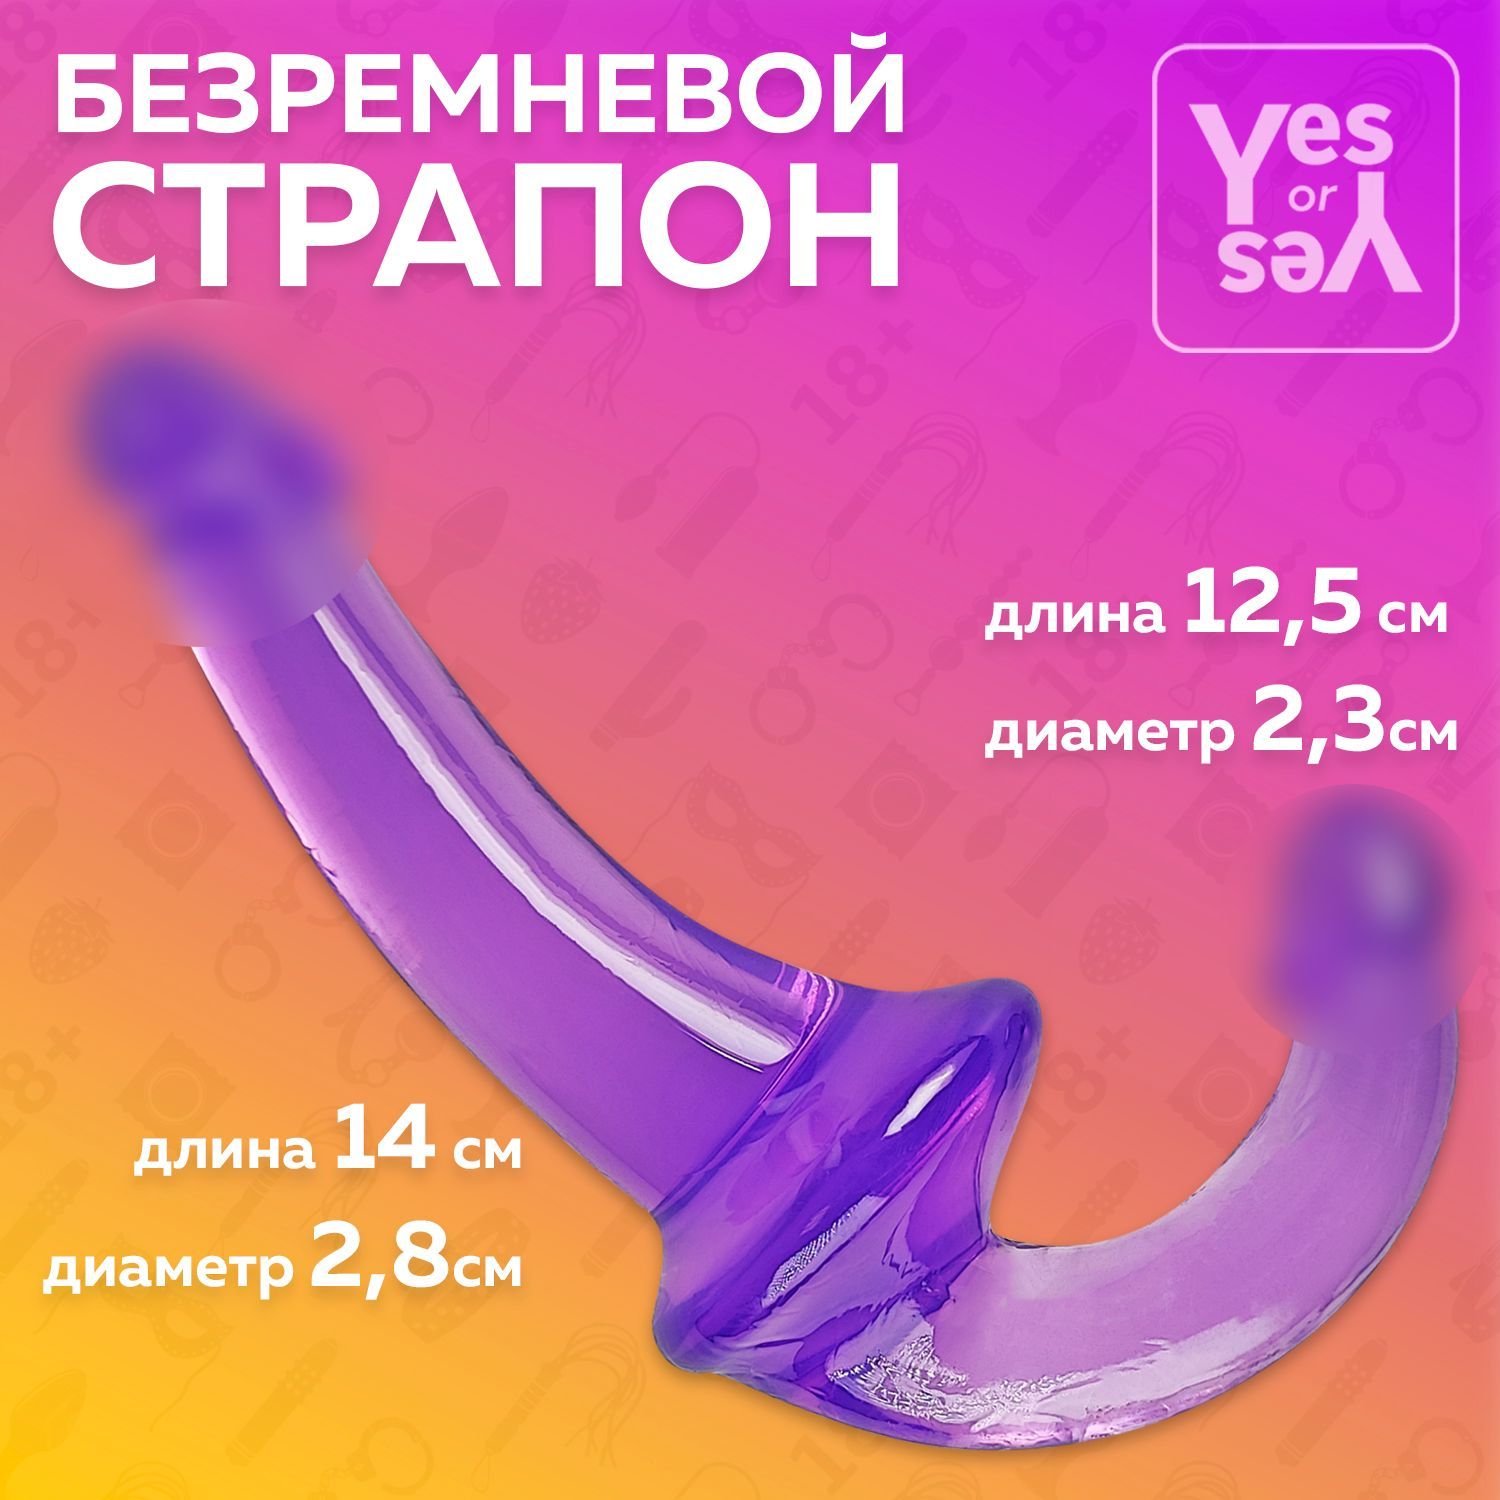 Безремневой страпон, Интим игрушка для пар, Секс игрушки, 18+, Yes or Yes - купить с доставкой по выгодным ценам в интернет-магазине OZON (769896959)